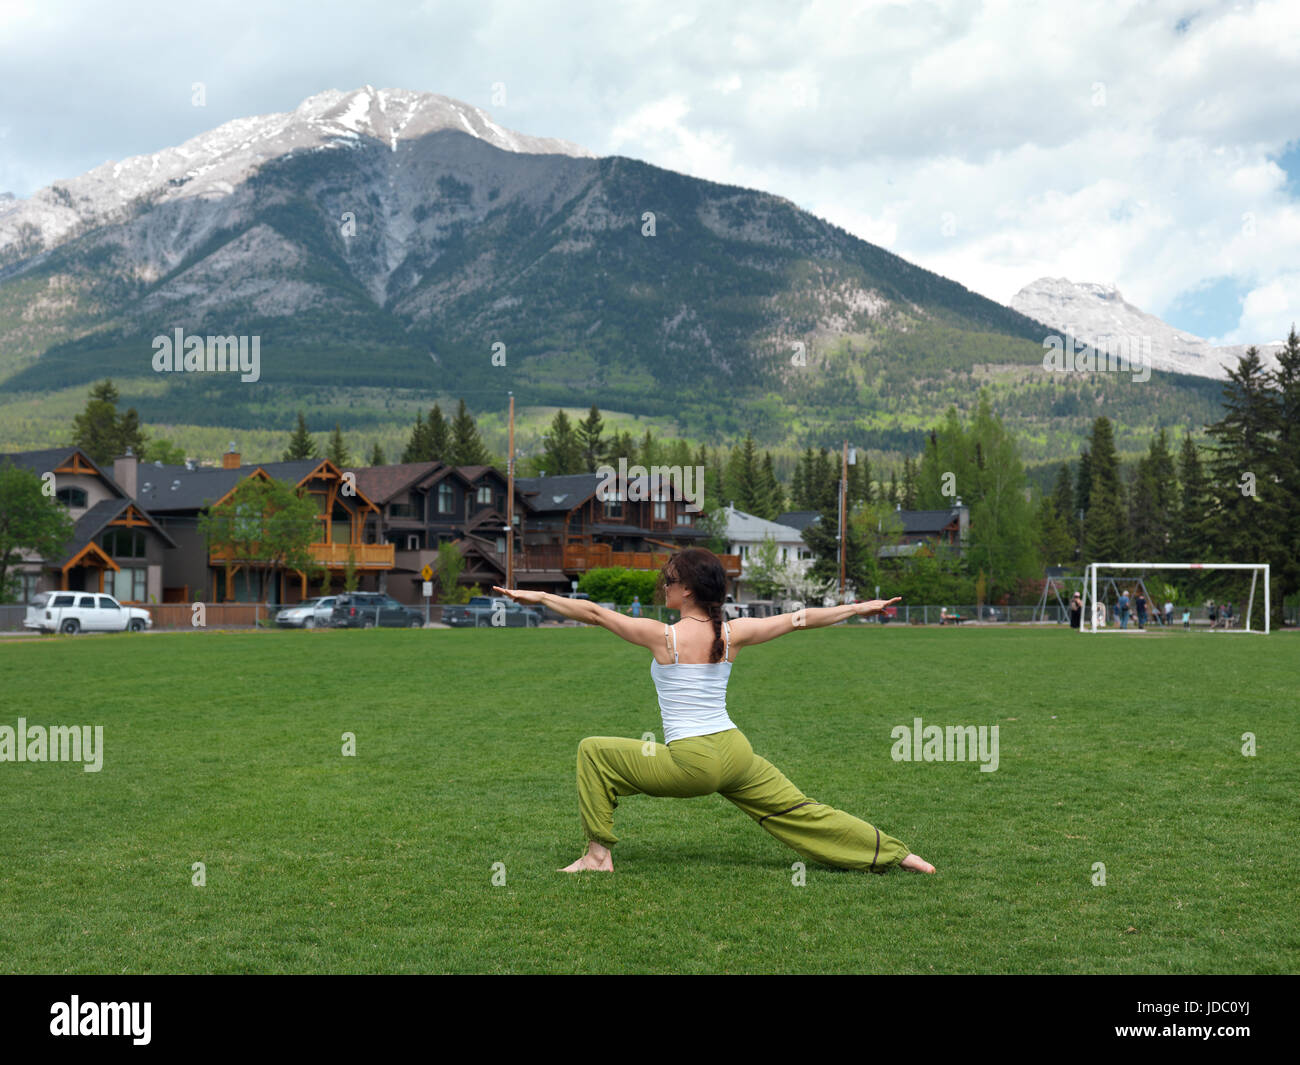 Young woman practicing yoga posture du guerrier à l'extérieur dans le parc du Centenaire à Canmore, ville de l'Alberta les montagnes Rocheuses canadiennes avec des montagnes Rocheuses en arrière-plan. Banque D'Images